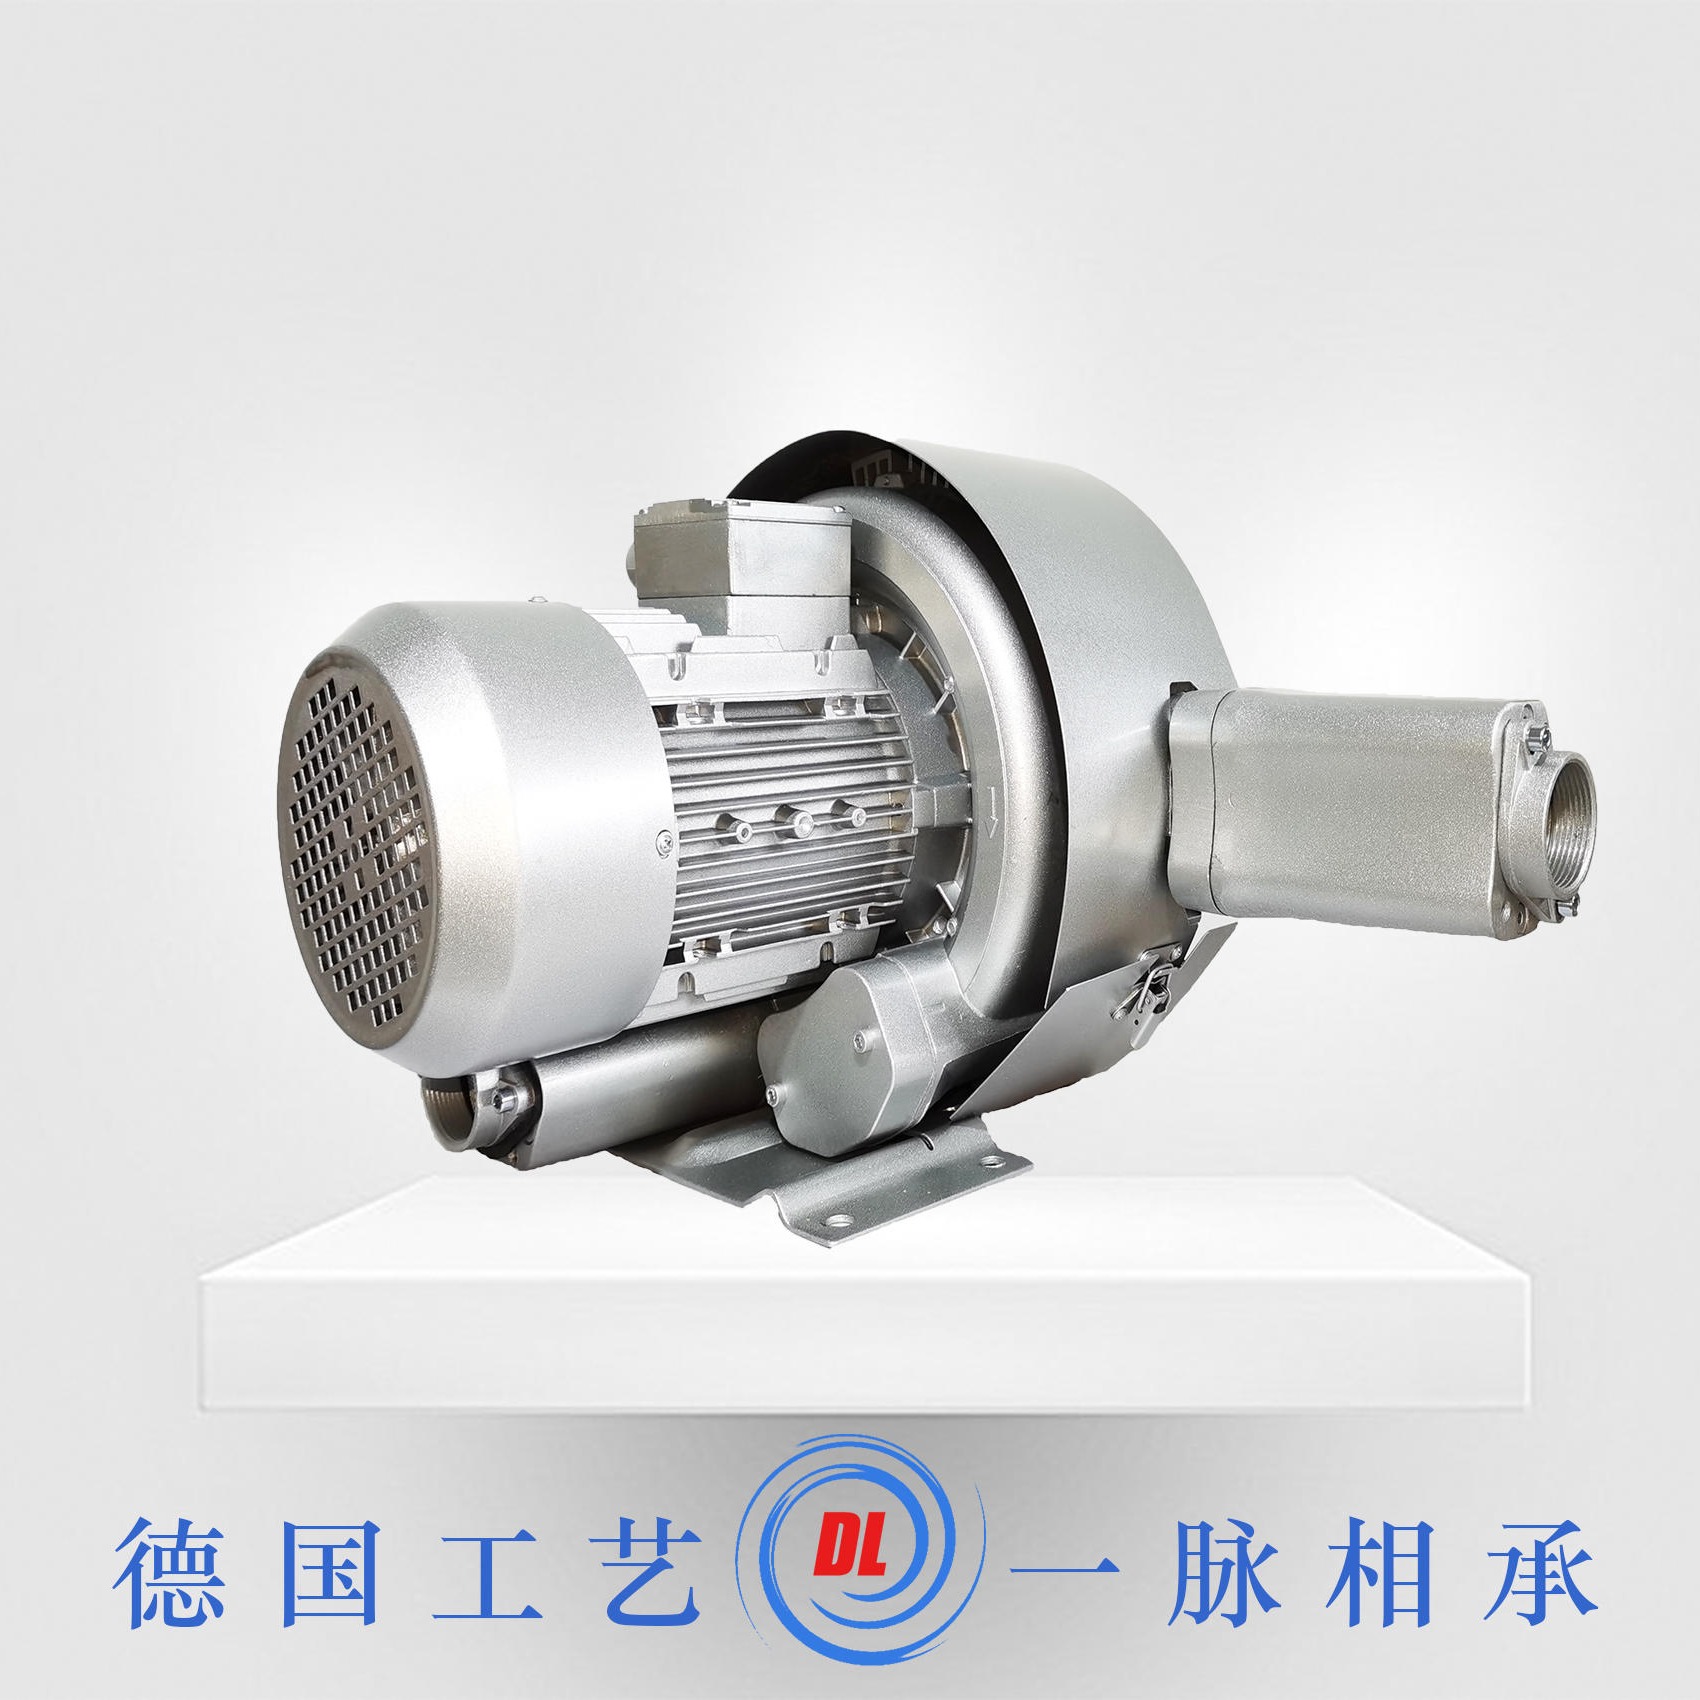 德凌DL-72-X5双级漩涡气泵 7.5kw吸料高压风机图片